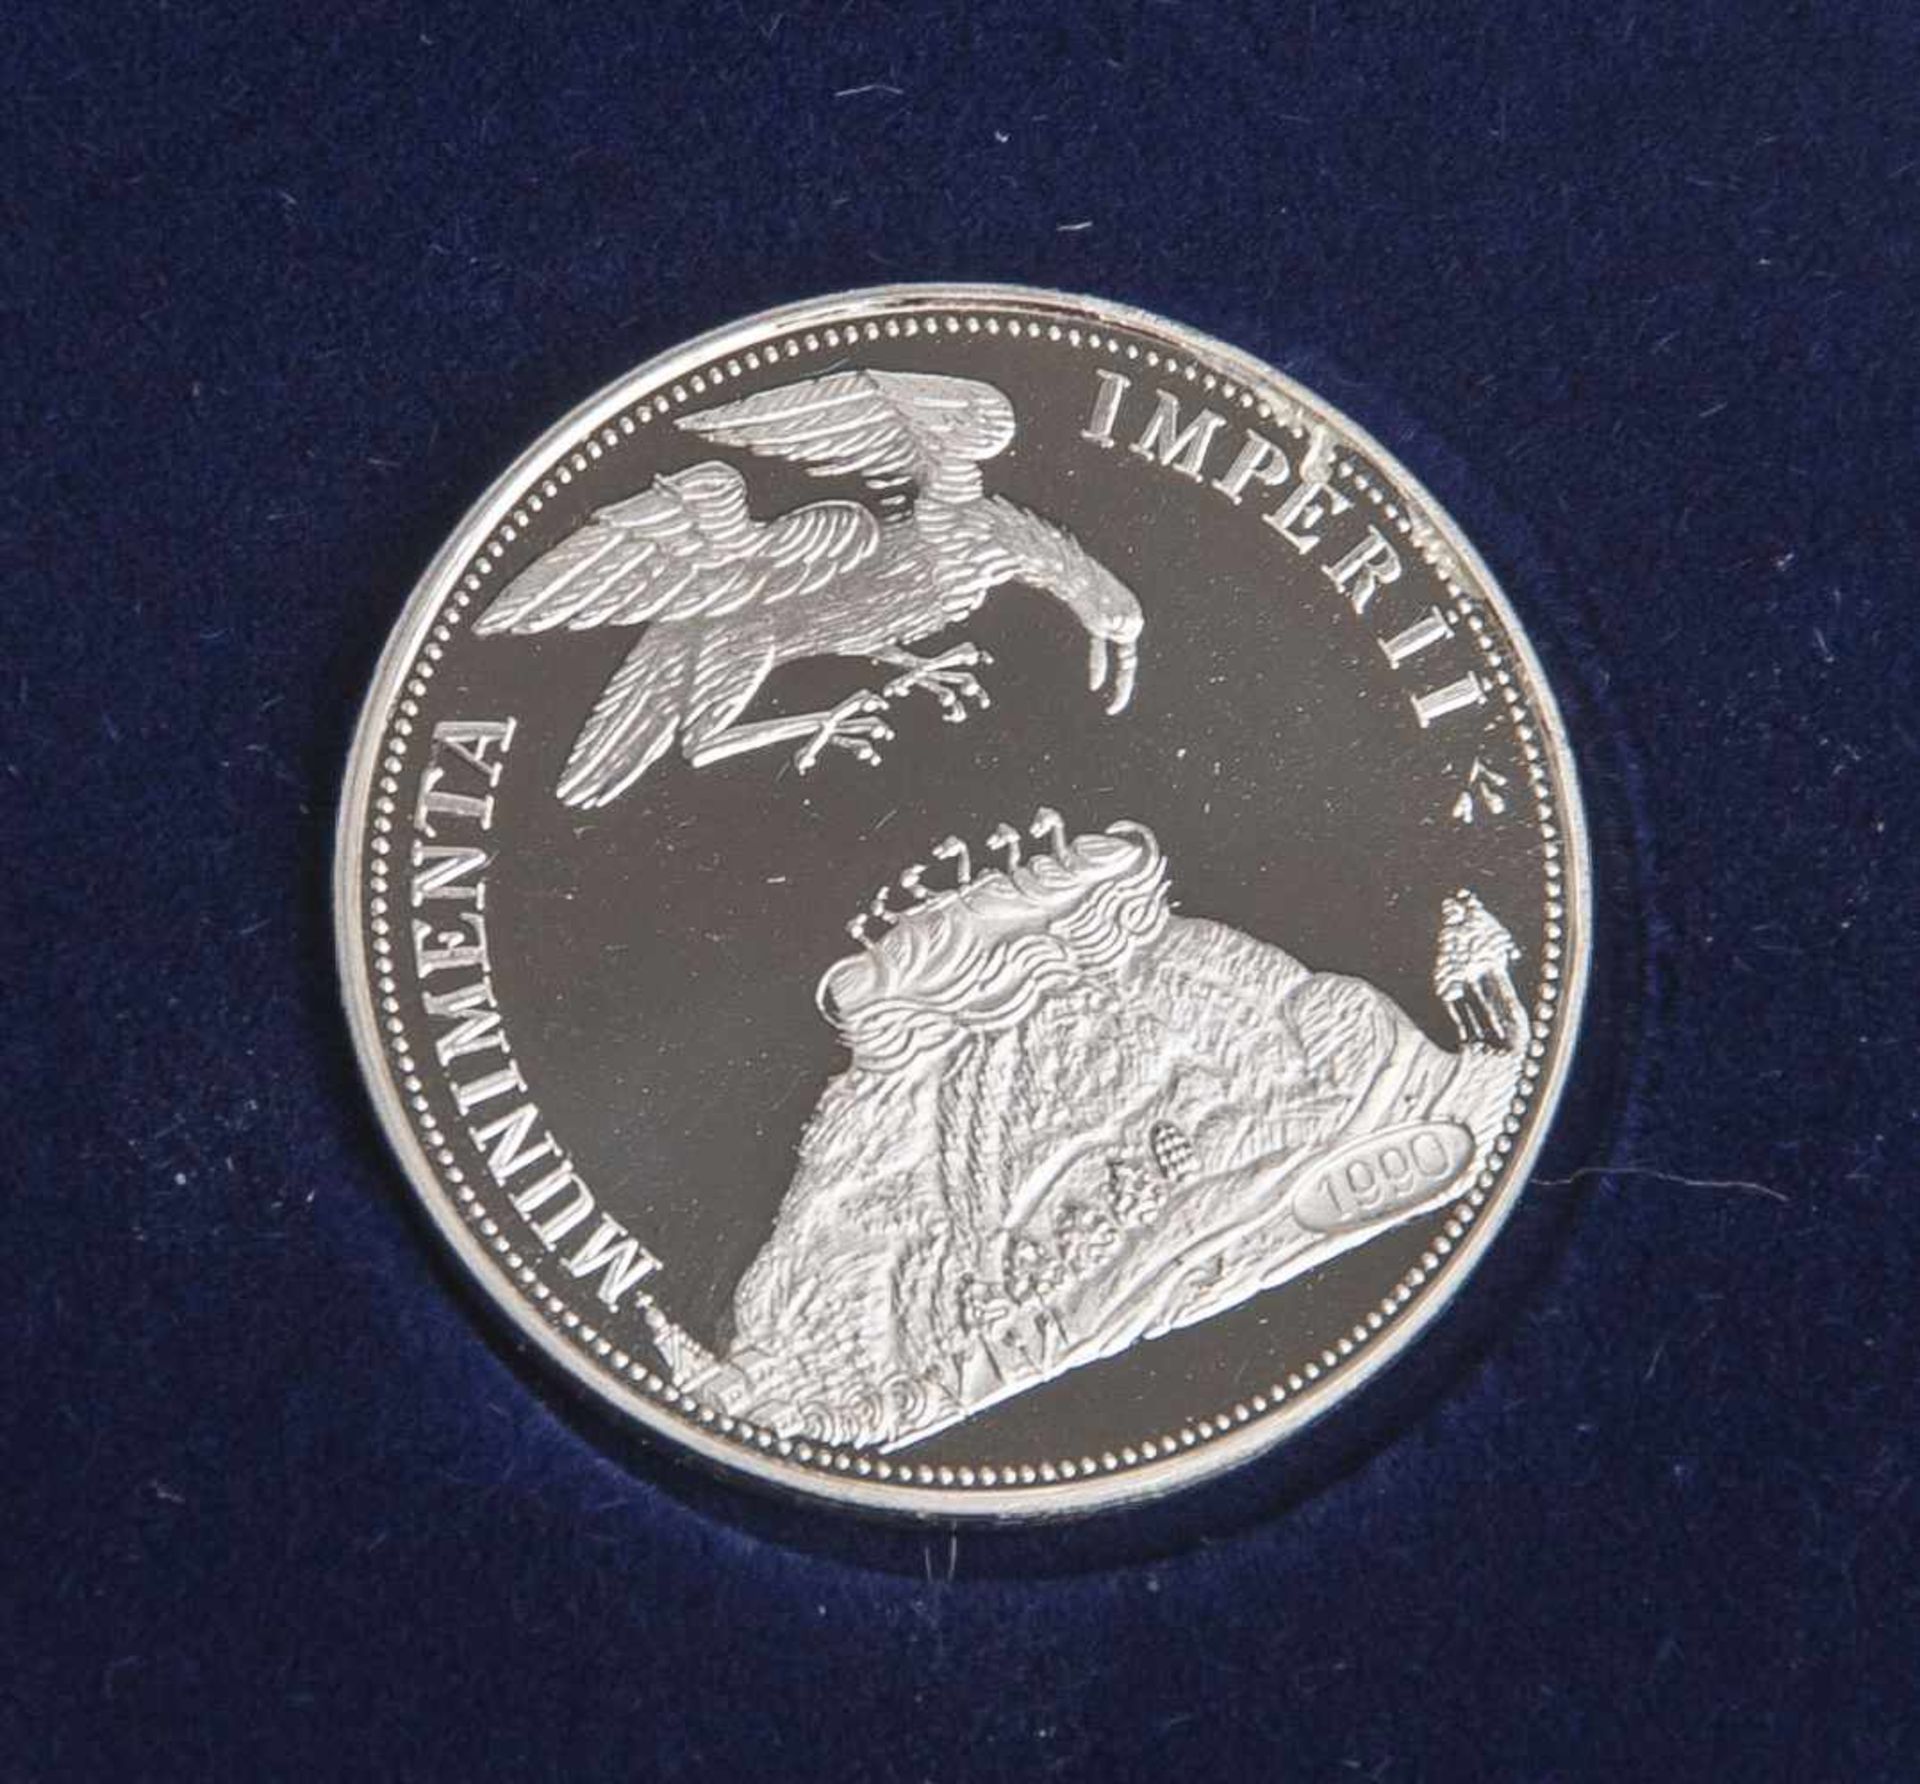 Großer Berliner Schautaler von 1678, Replik (Deutschland 1990), 500 Silber, Dm. 30,1 mm,Gewicht